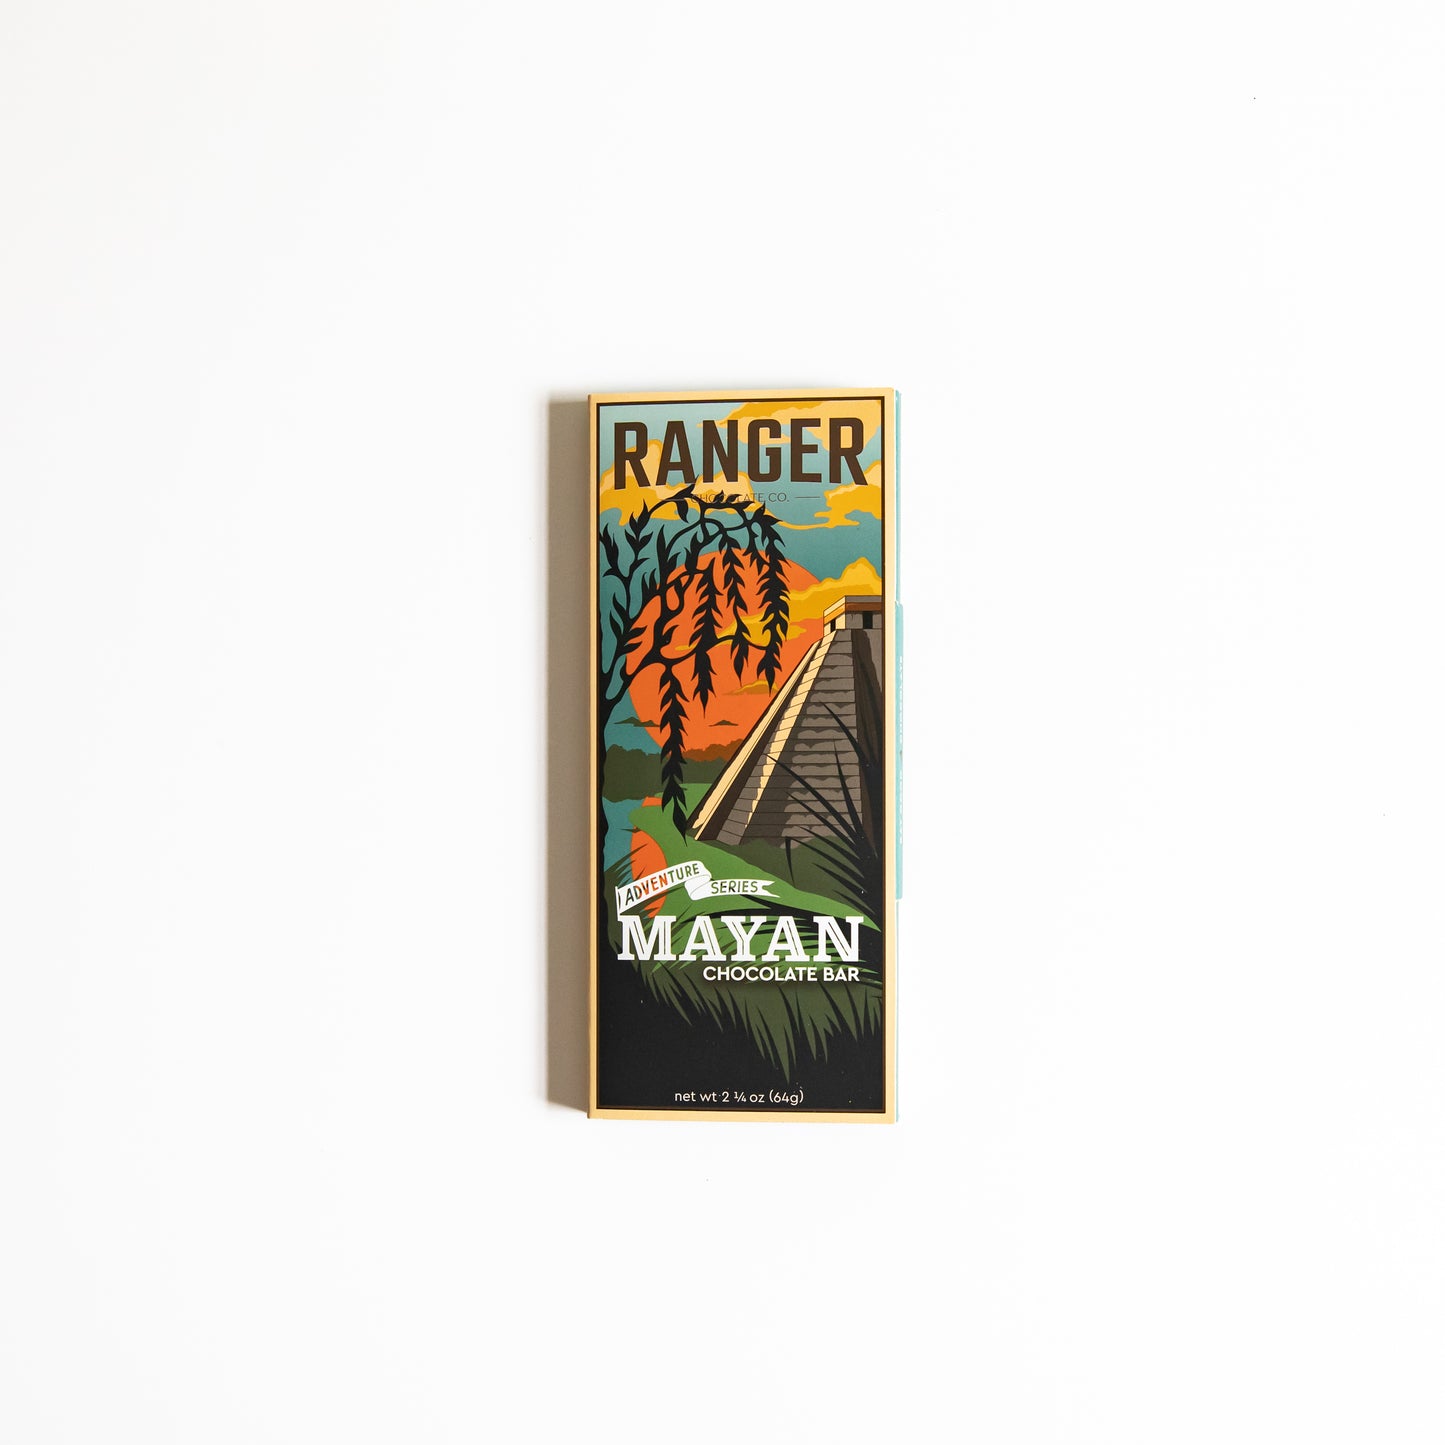 Mayan Chocolate Bar